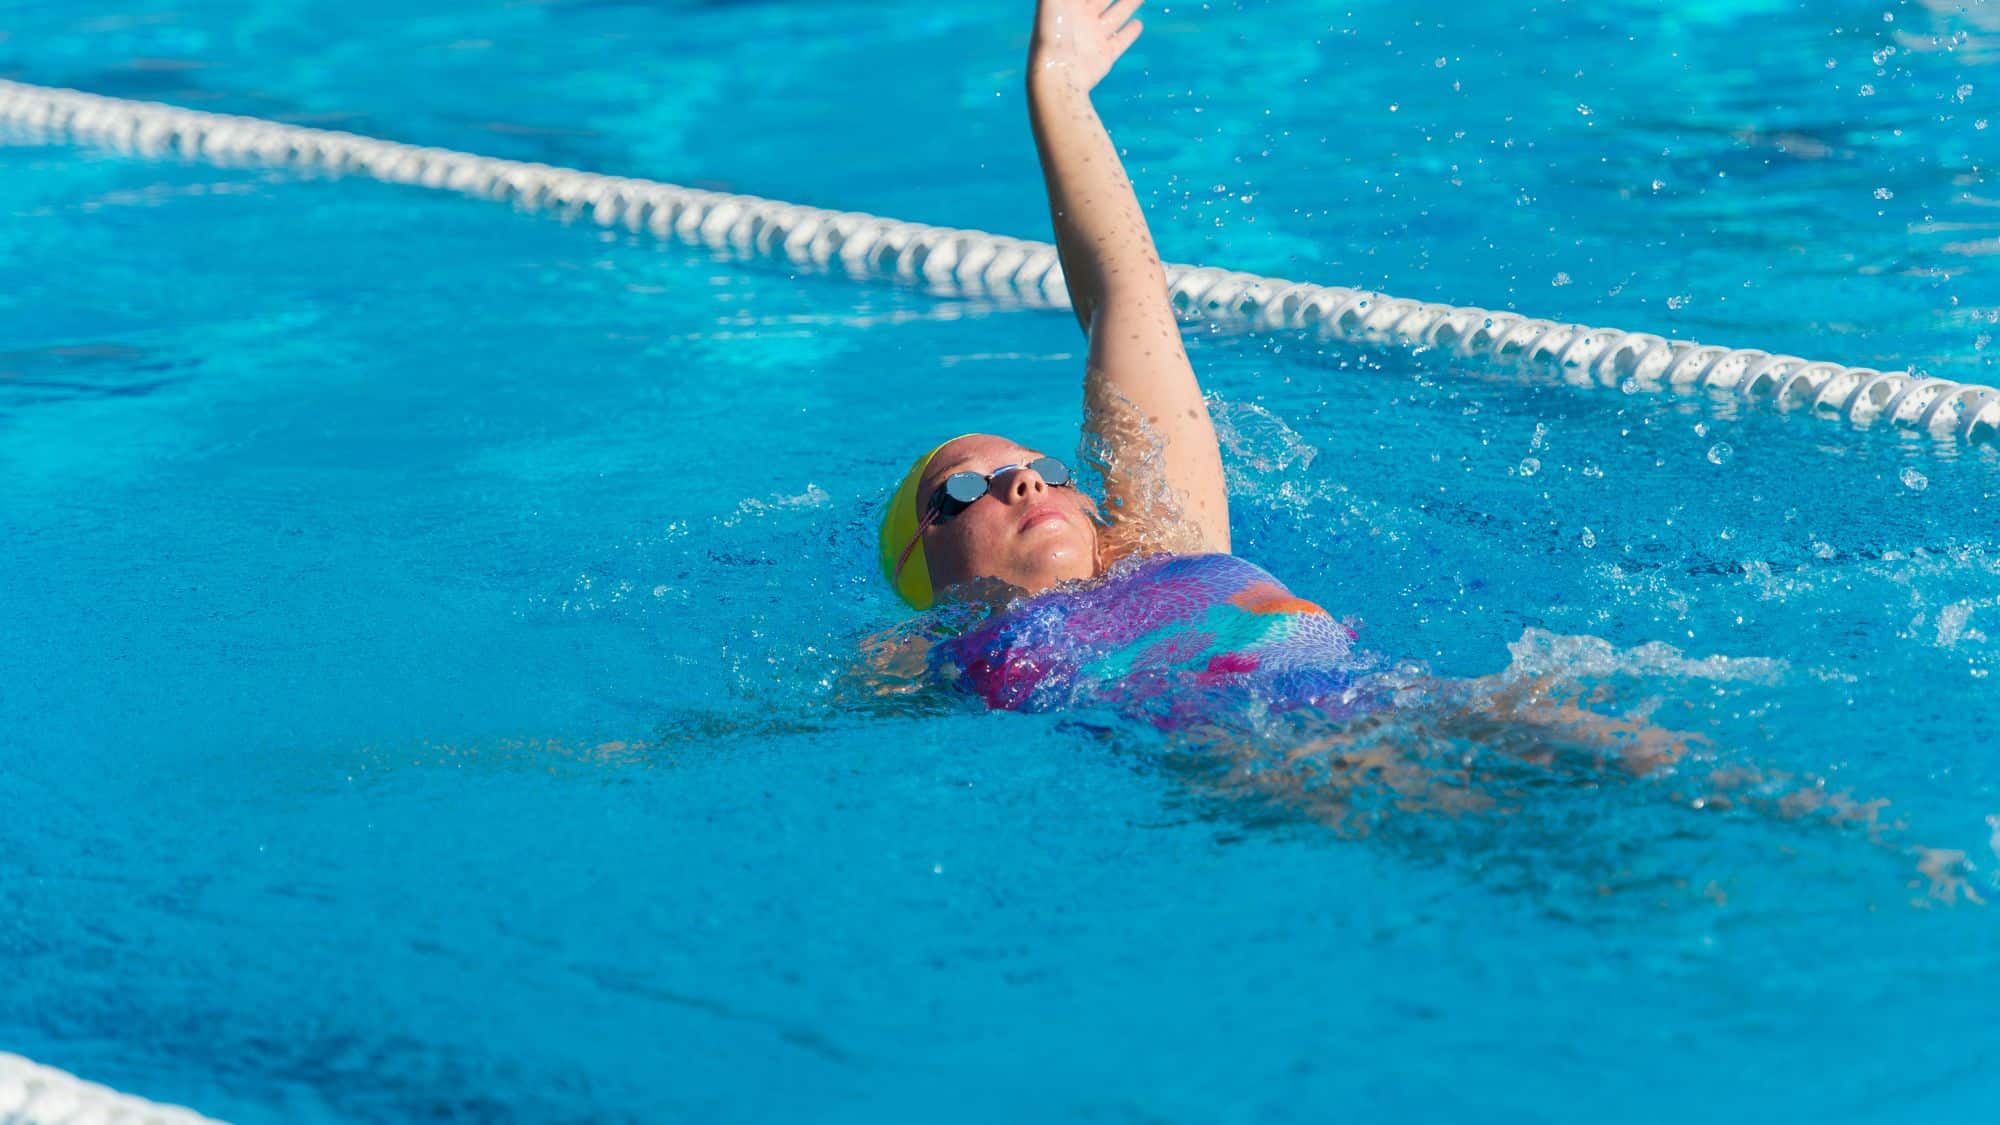 swimmer in lane demonstrating backstroke